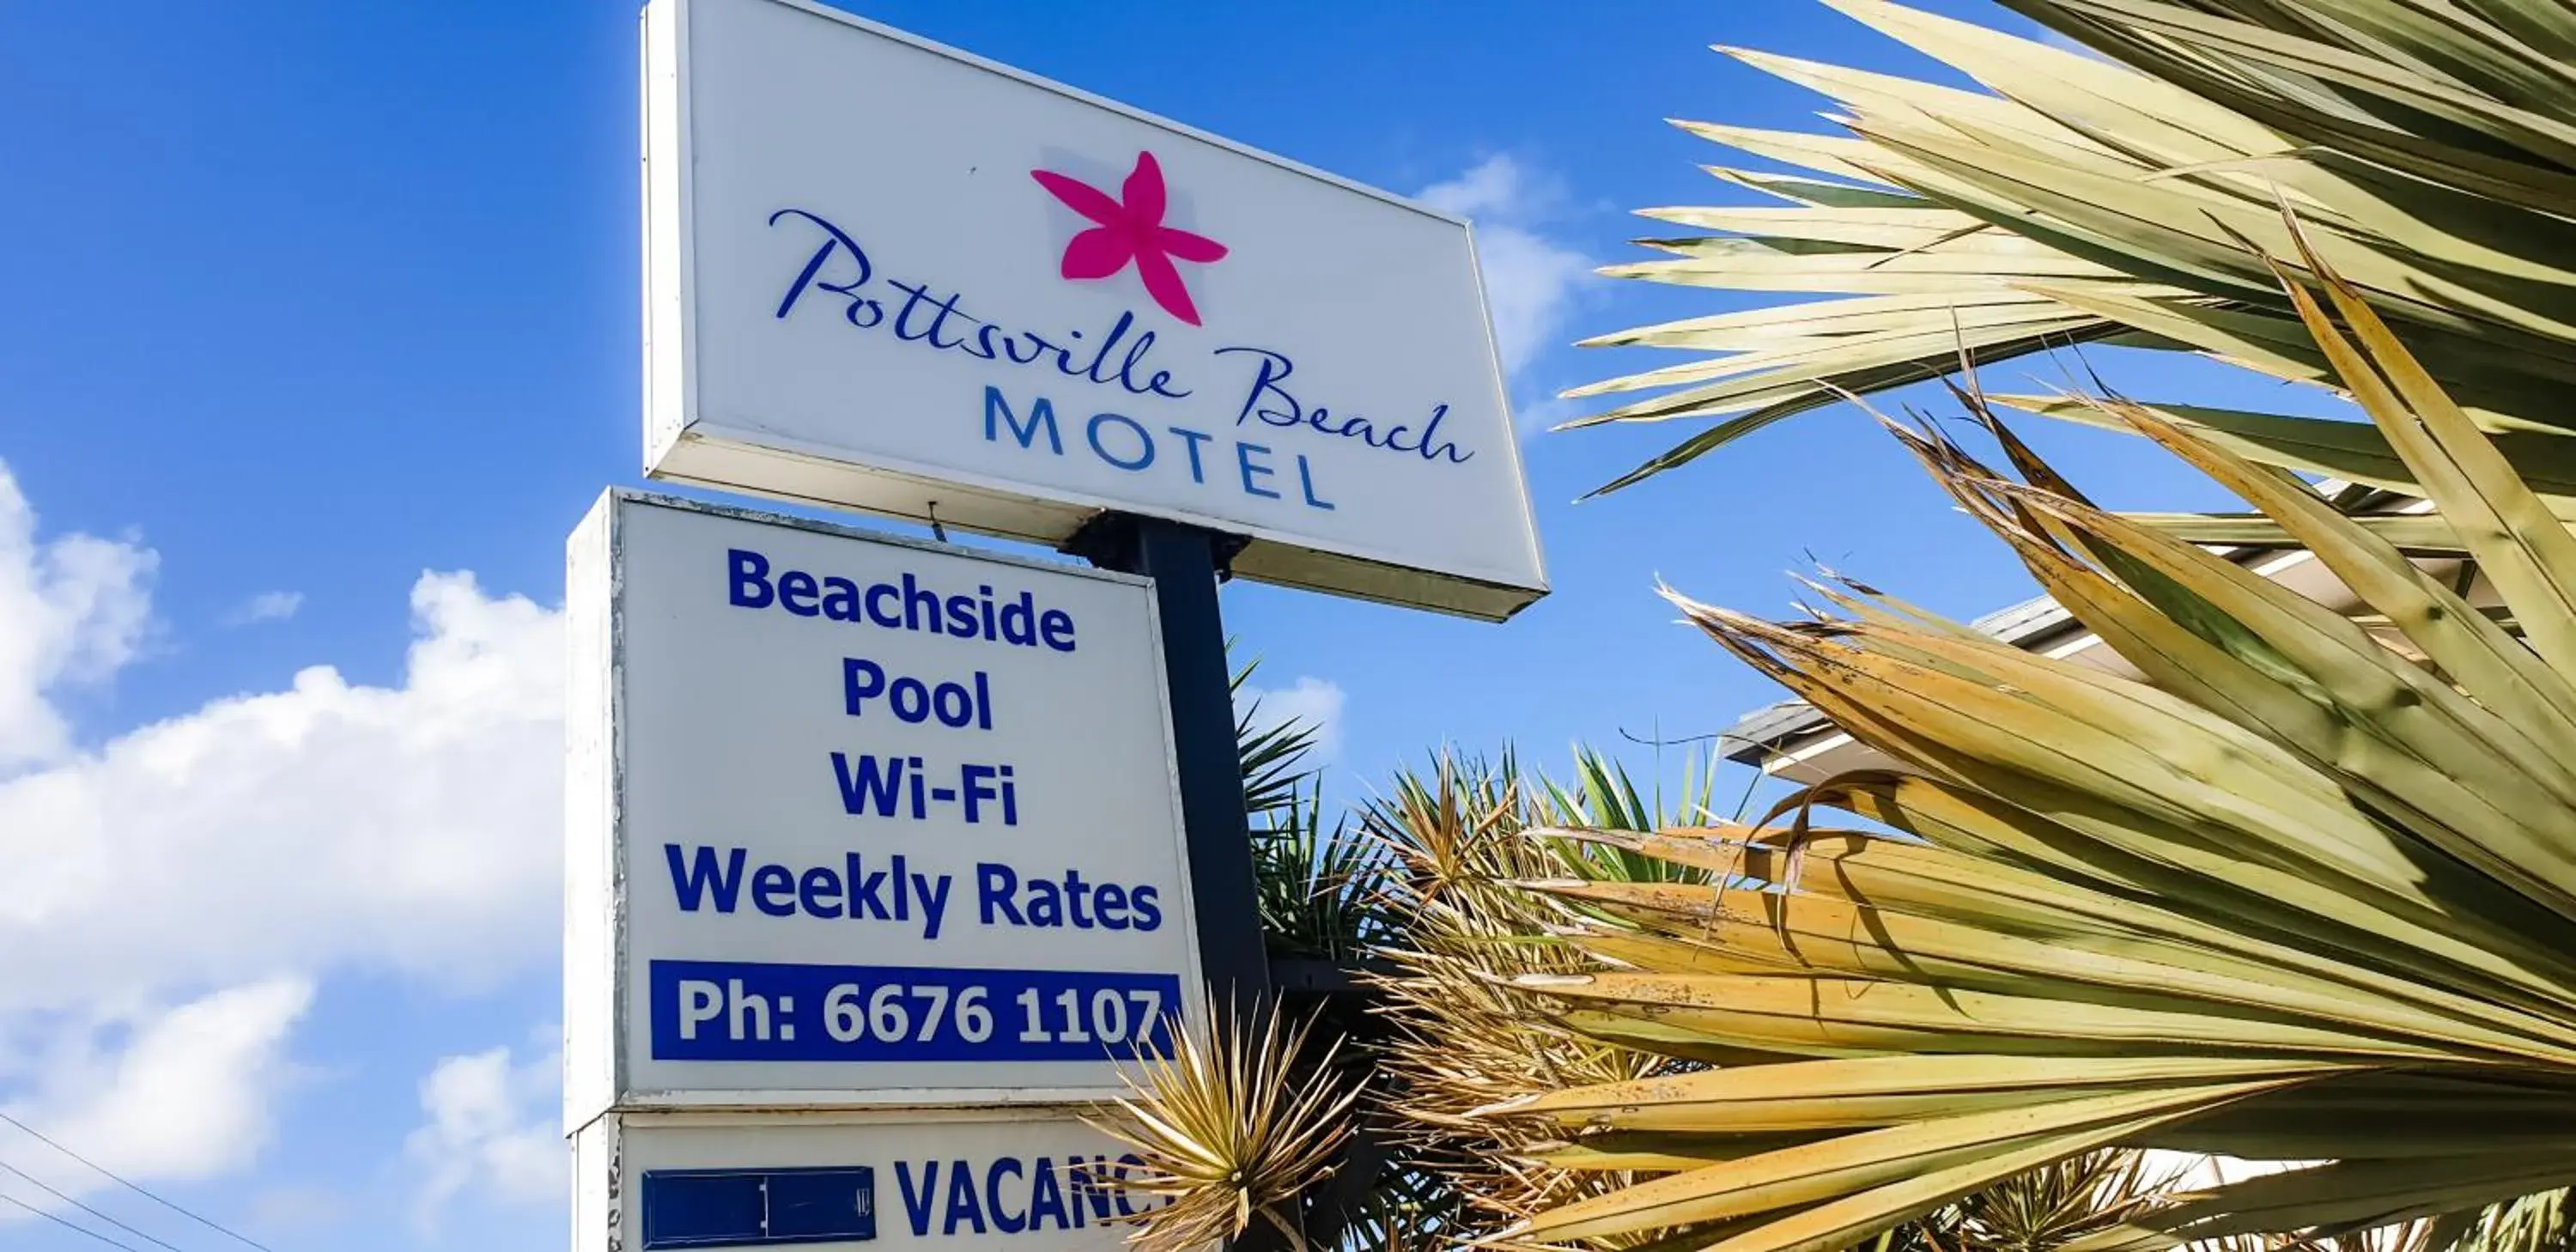 Facade/entrance in Pottsville Beach Motel